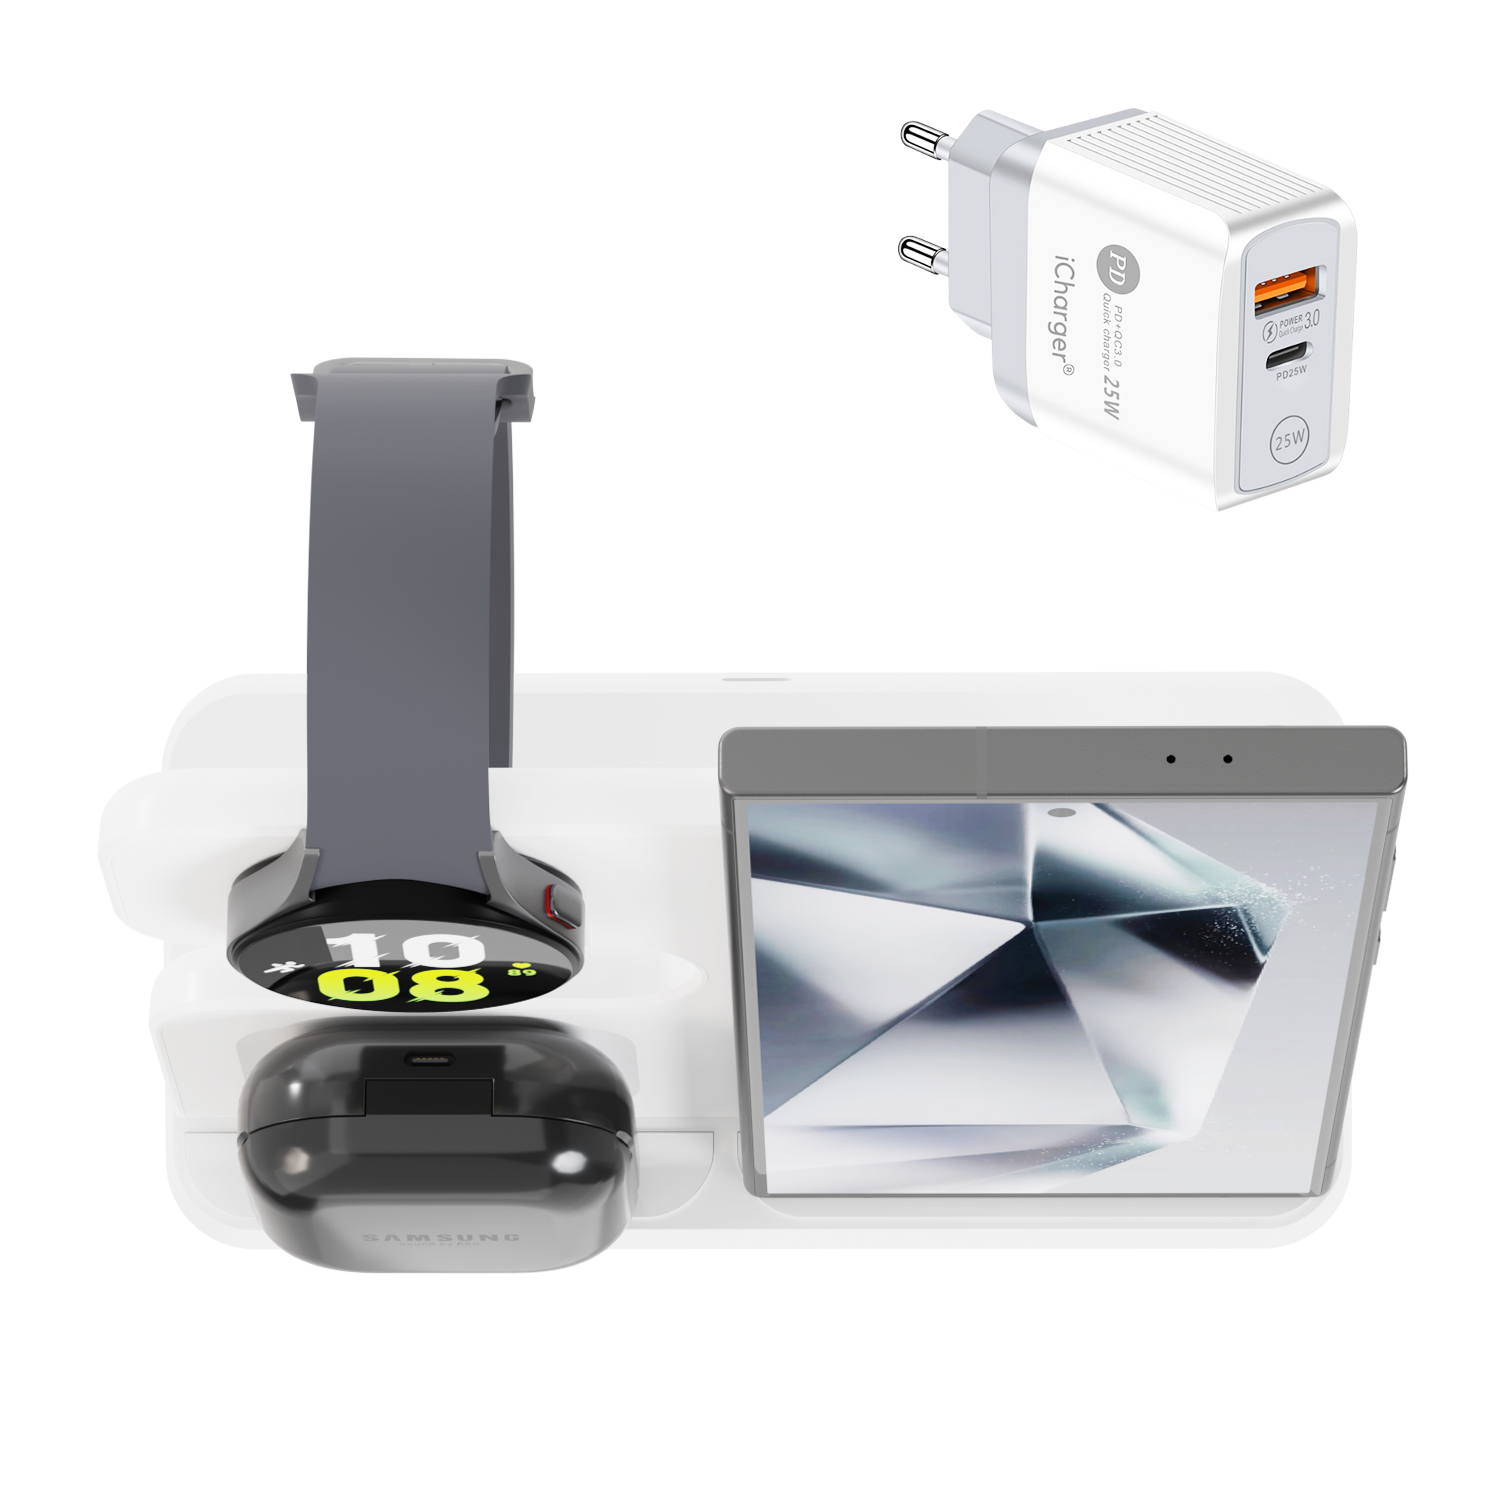 iCharger Samsungs editie in wit, 3-in-1 Qi draadloze oplaadstation met een tablet, smartwatch en oordopjes, inclusief een iCharger adapter.